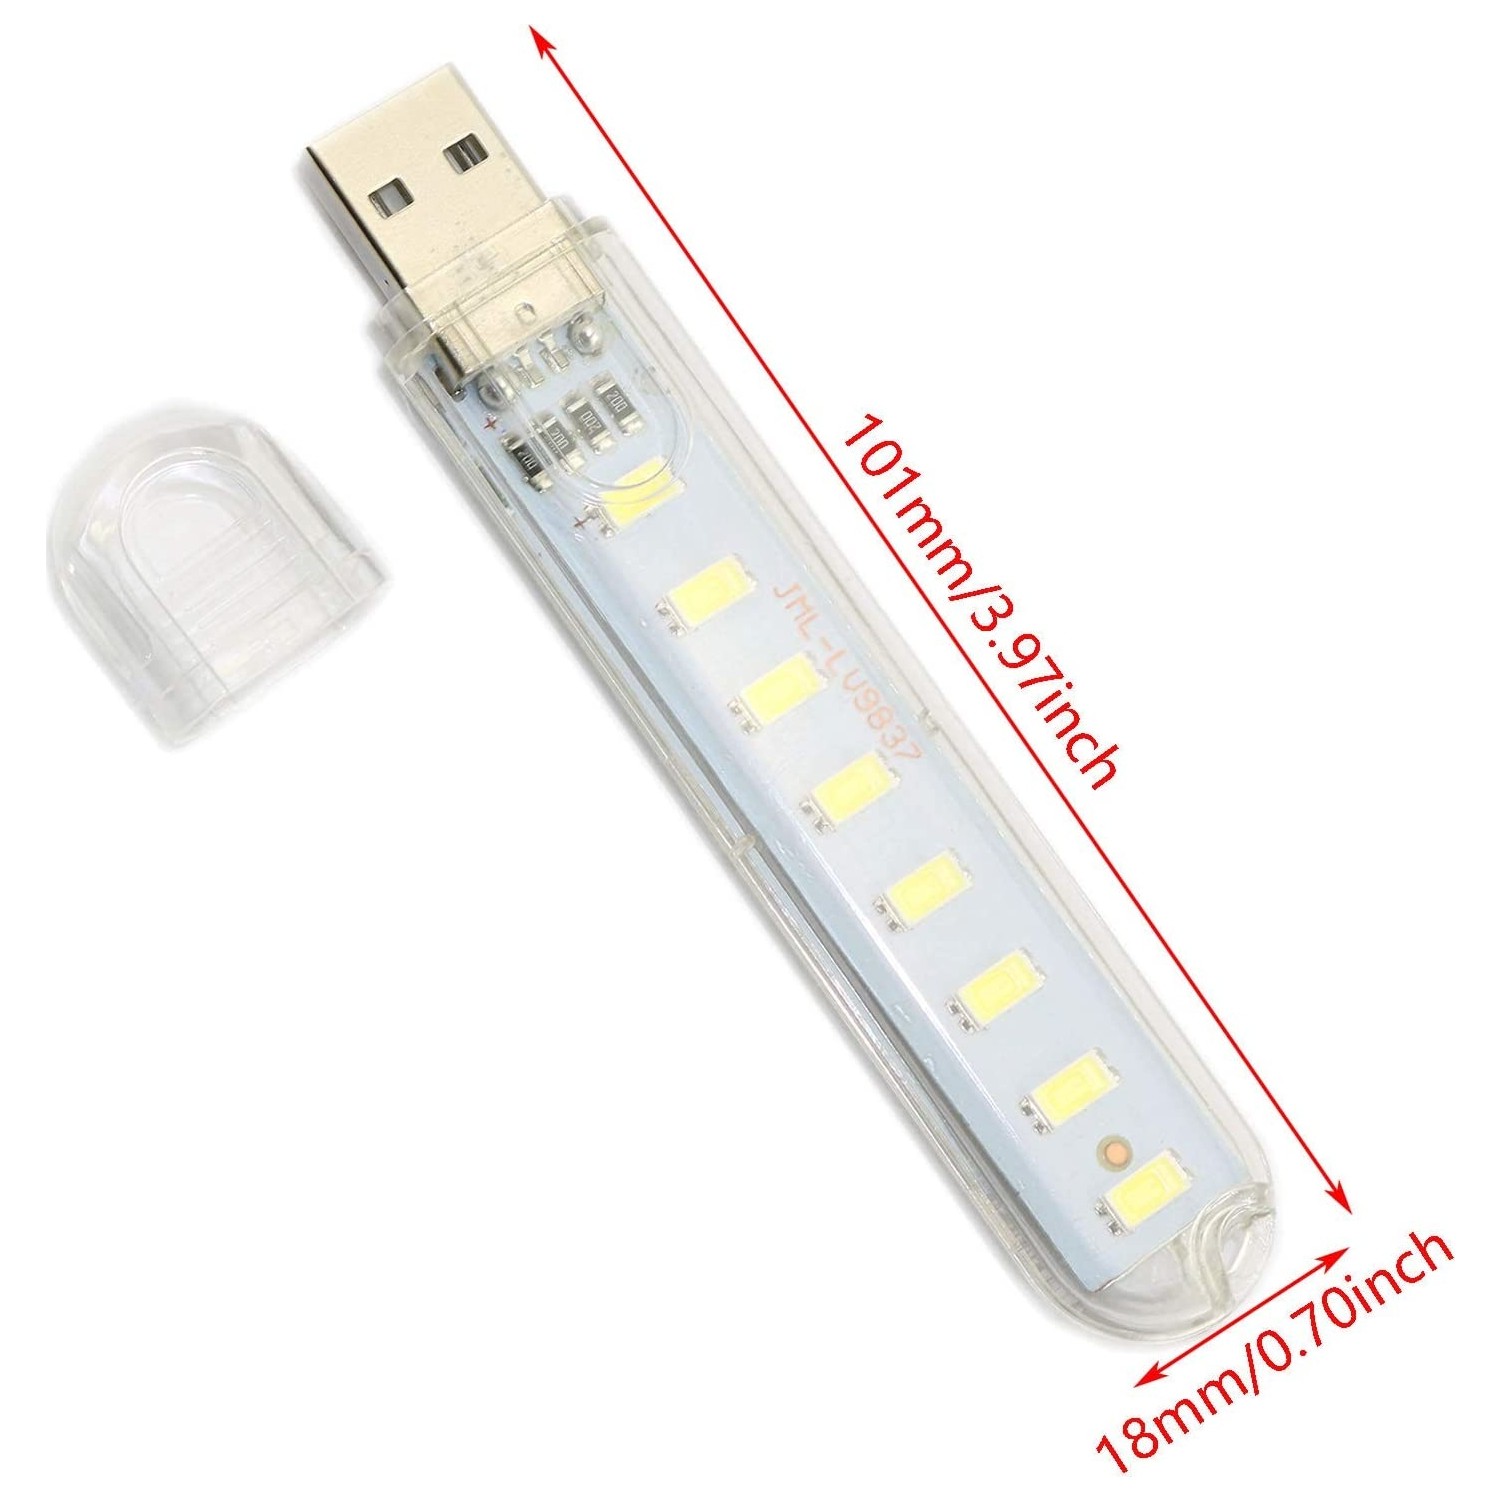 Buy 2PCS 8 LED Mini Portable USB Lamp Lighting For PC Laptop Mobile